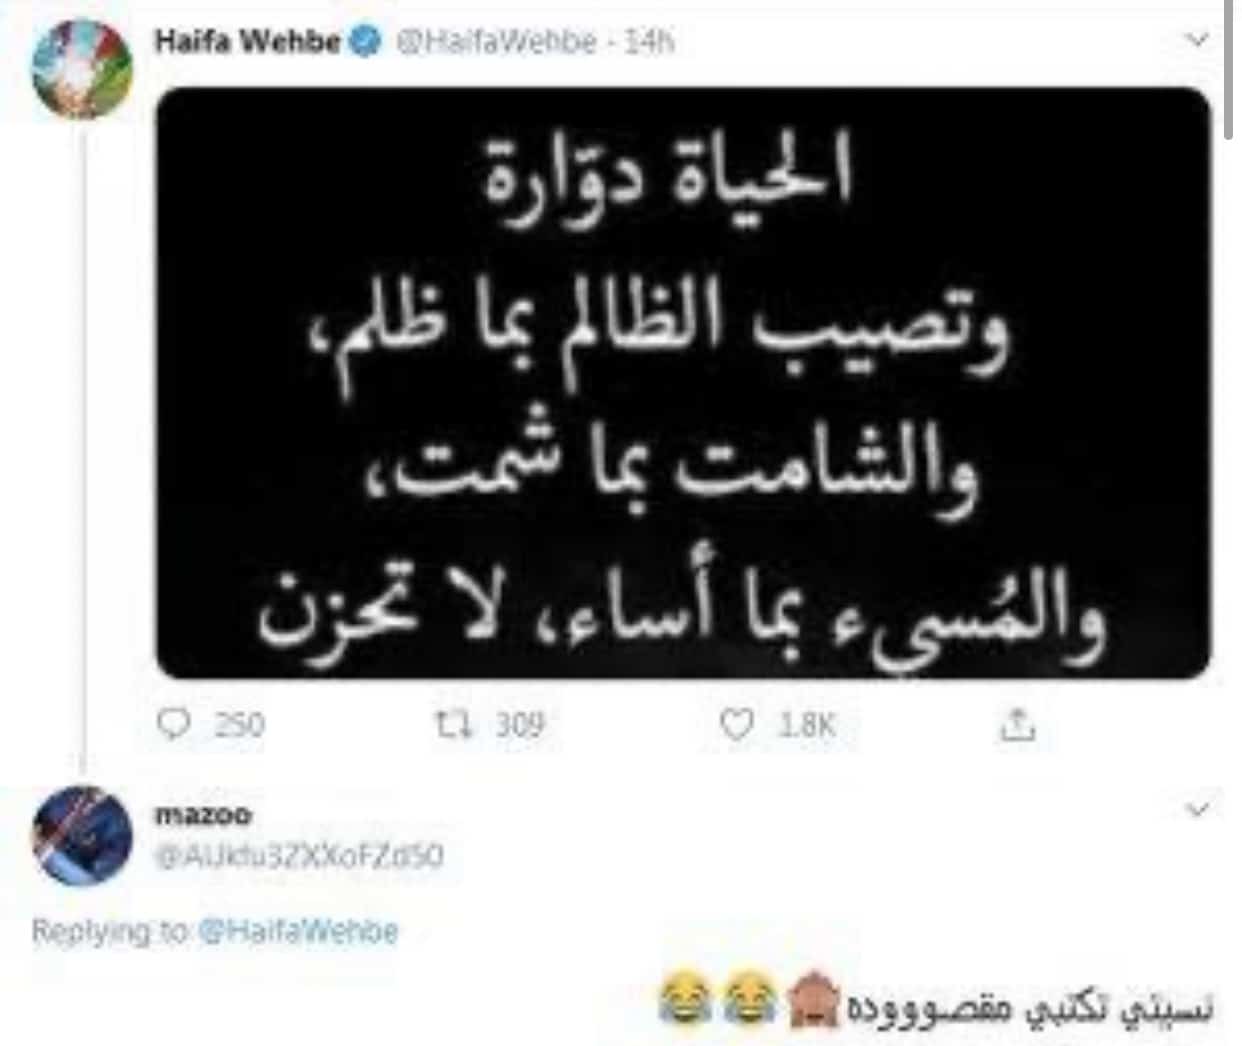 هيفاء وهبي تشمت ب فضيحة أحمد أبو هشيمة